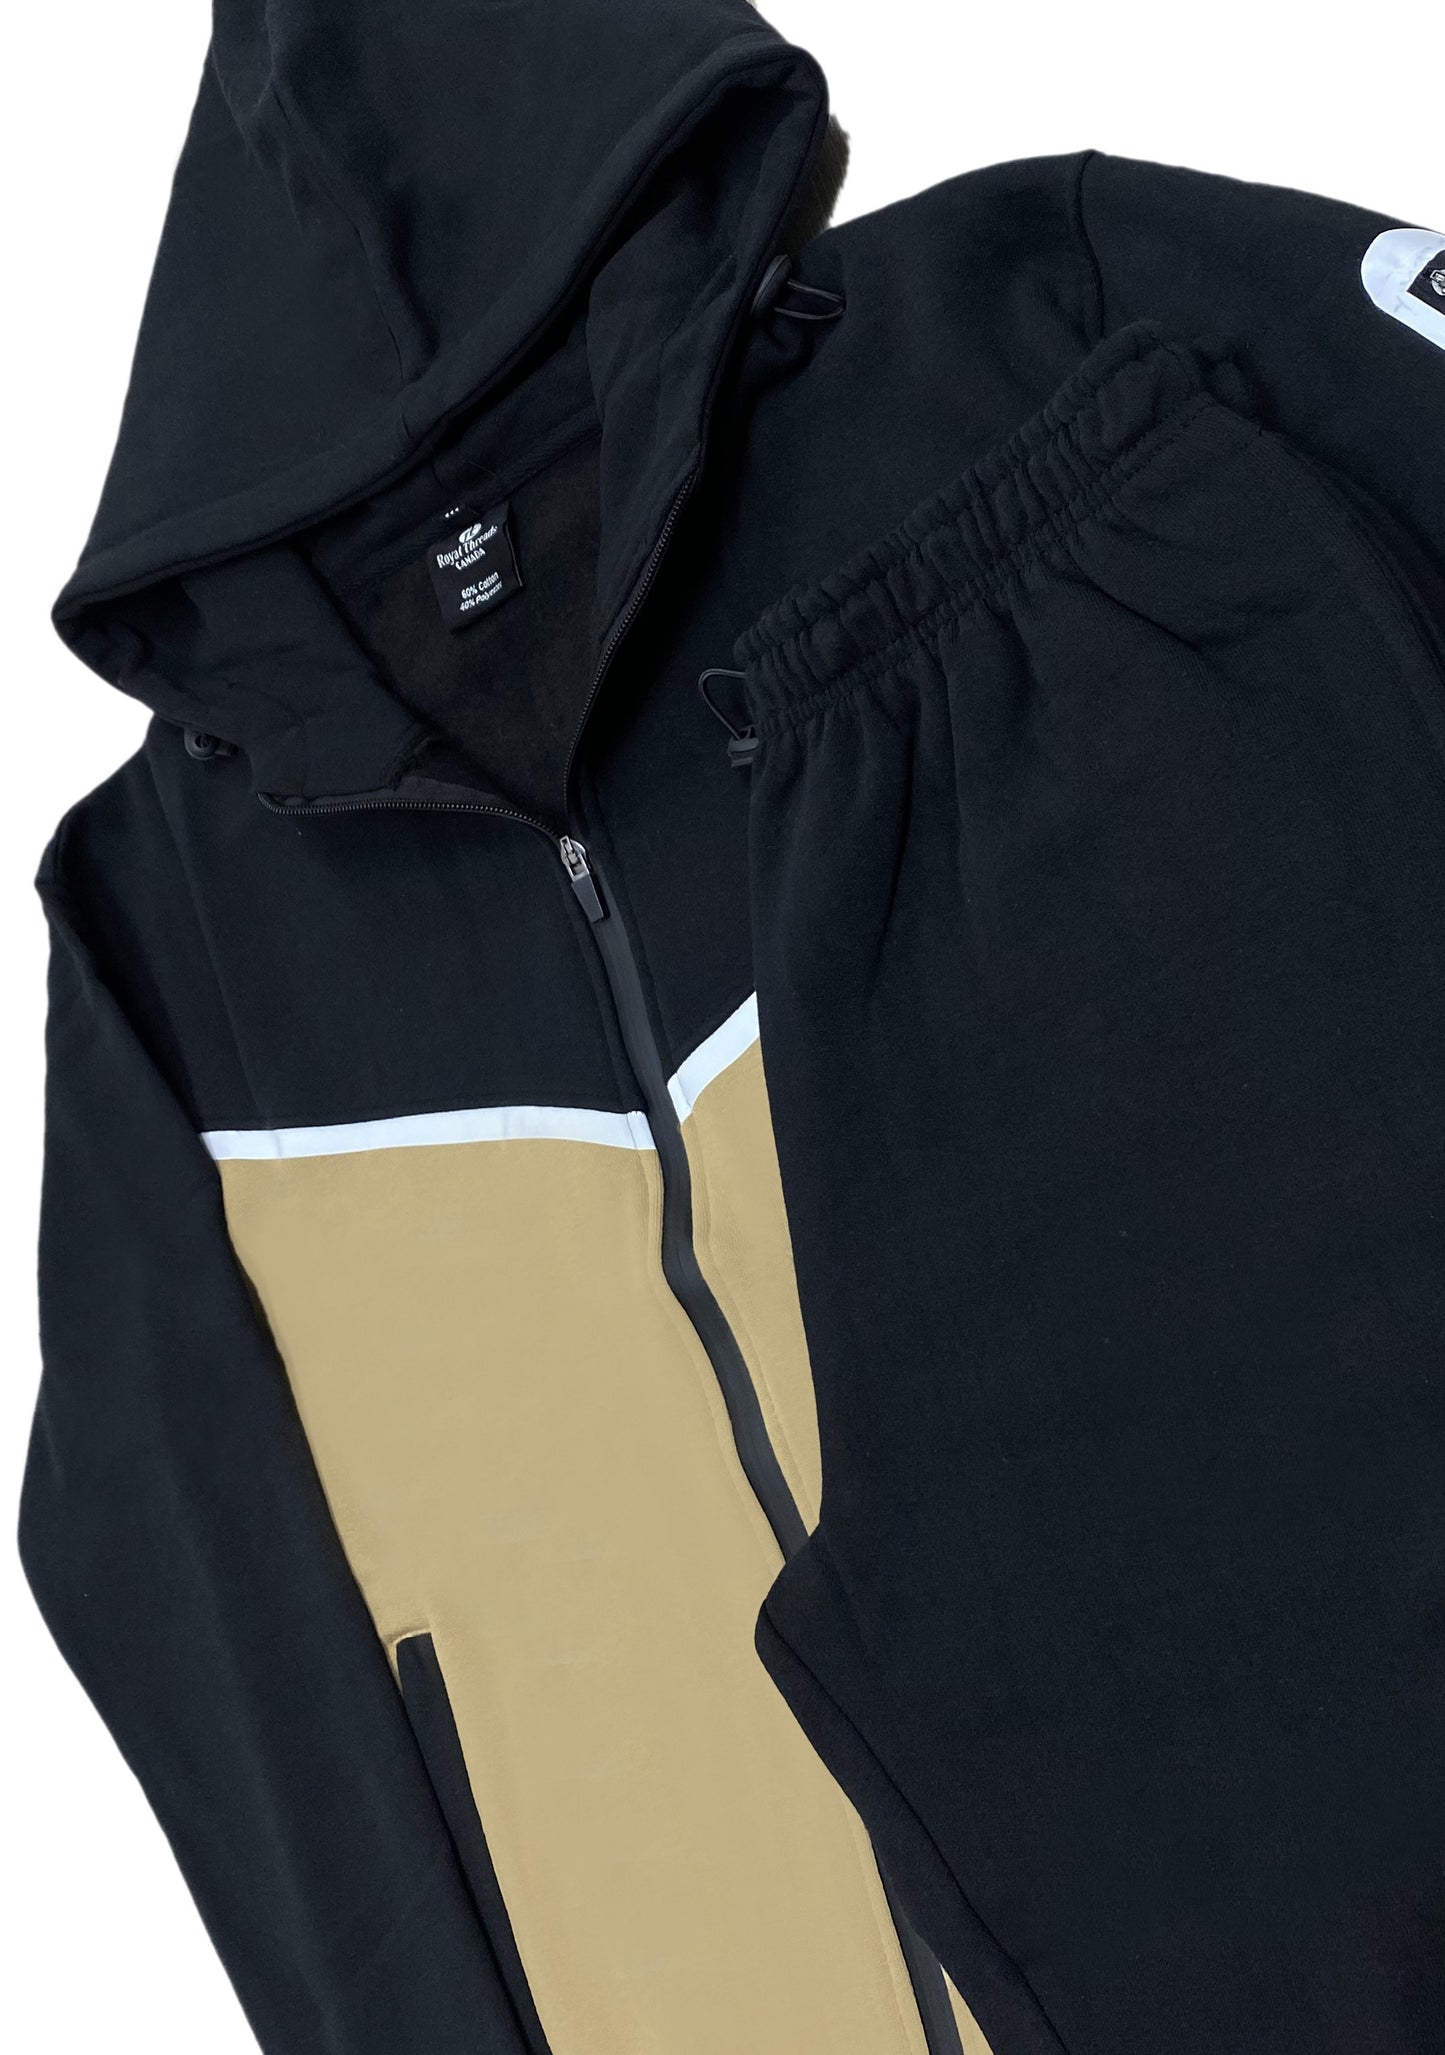 Royal Threads Canada Men’s Official Tech Fleece Sweat suit Heavy Duty Winter Sweat Jacket with Fleece Sweatpants